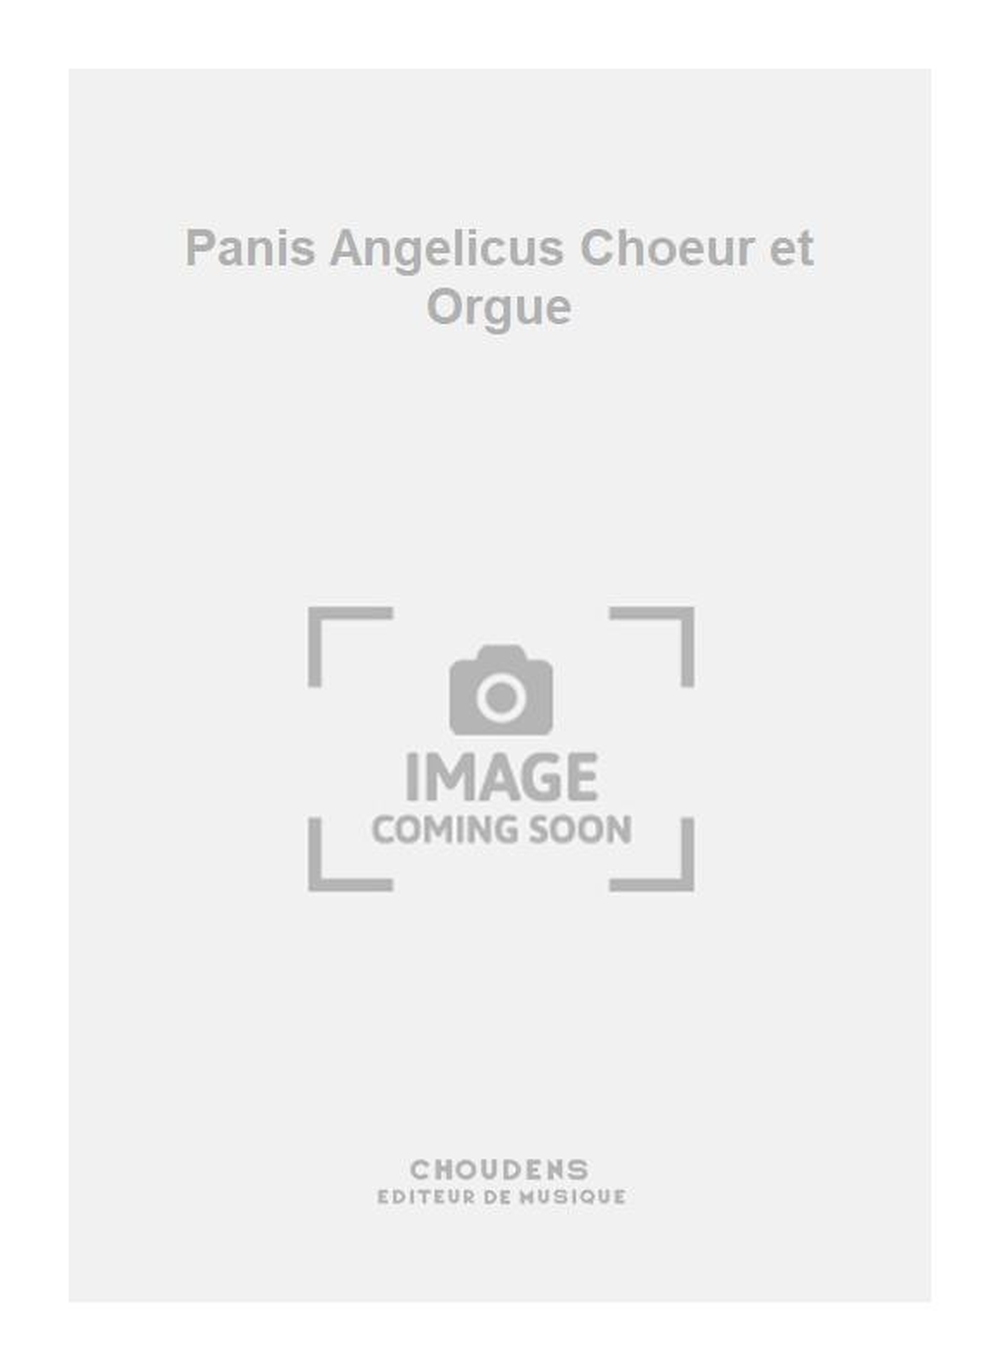 Pernette: Panis Angelicus Choeur et Orgue